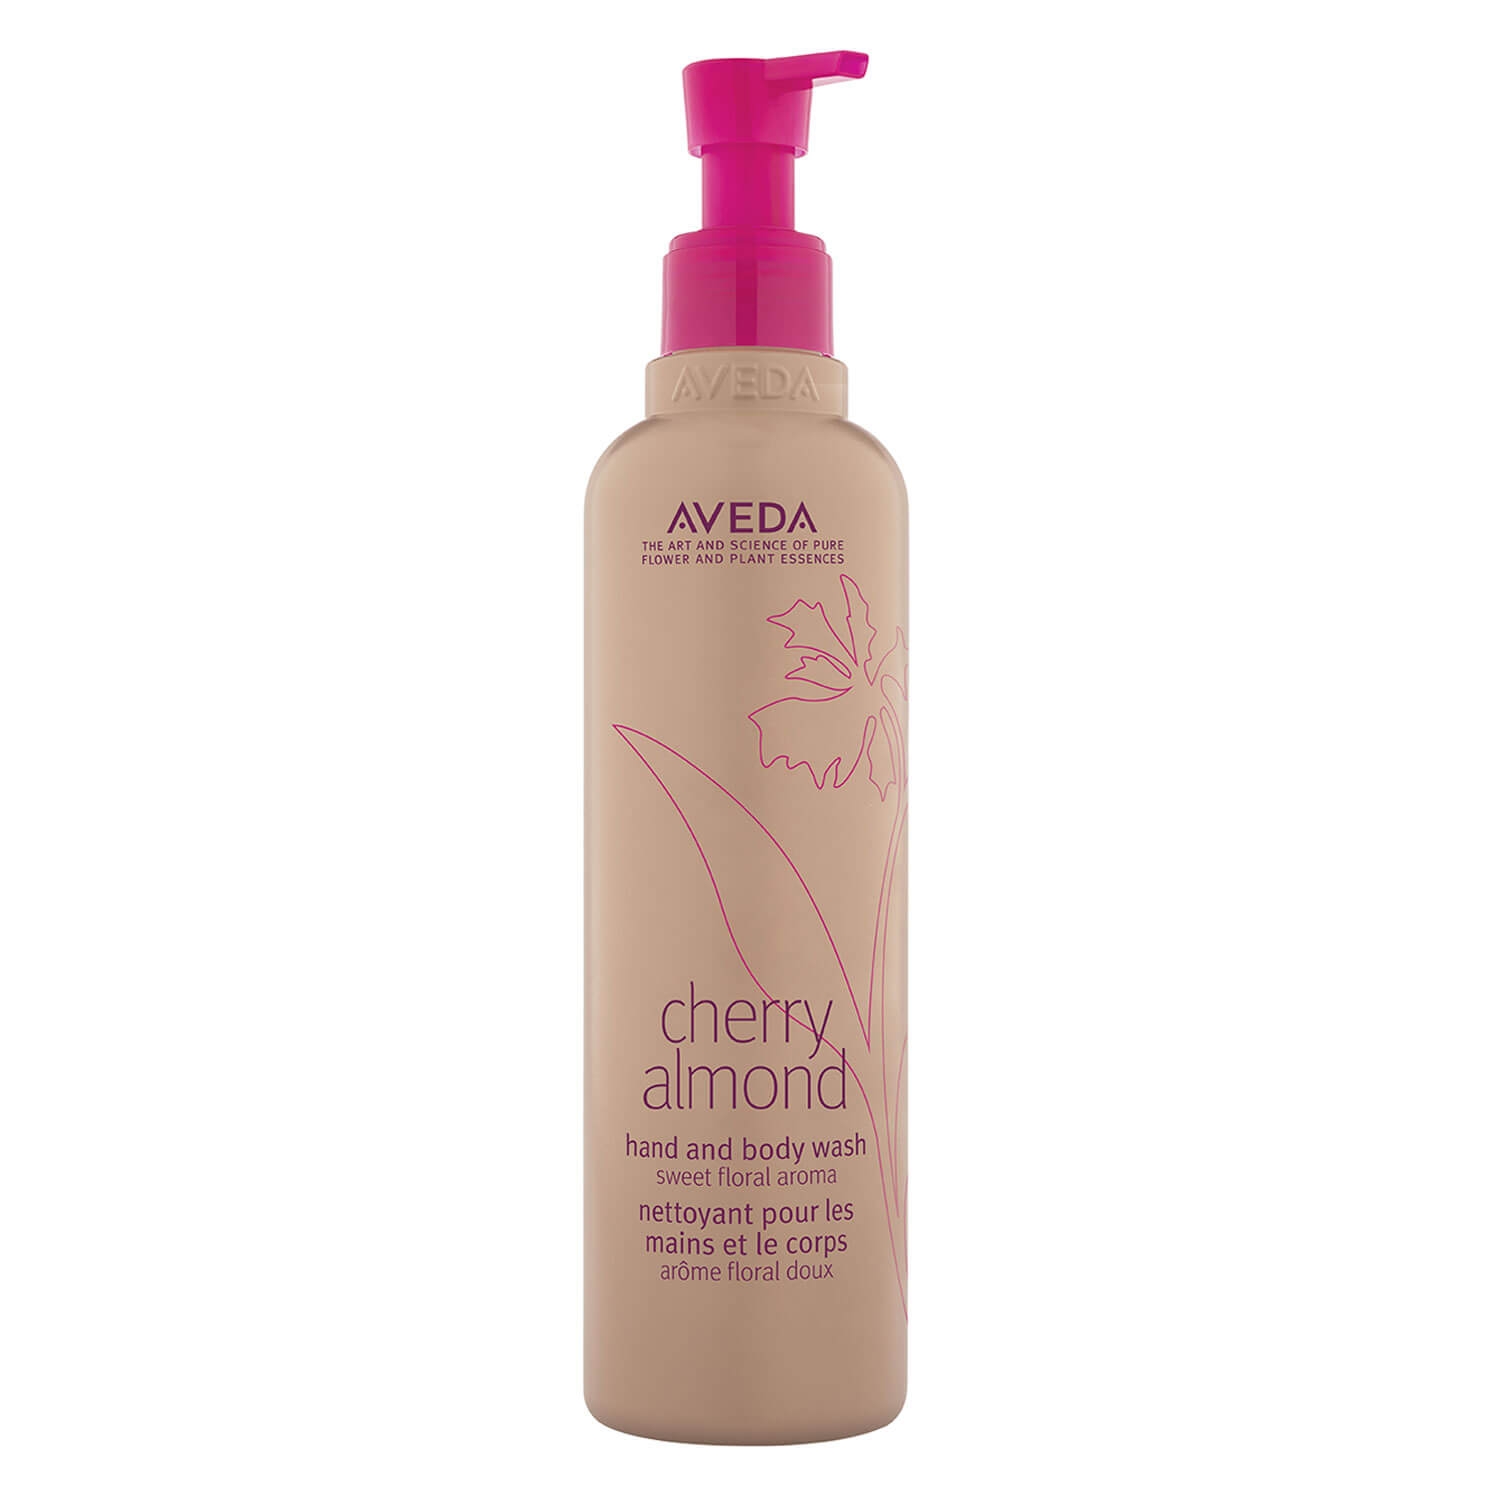 Produktbild von cherry almond - hand & body wash